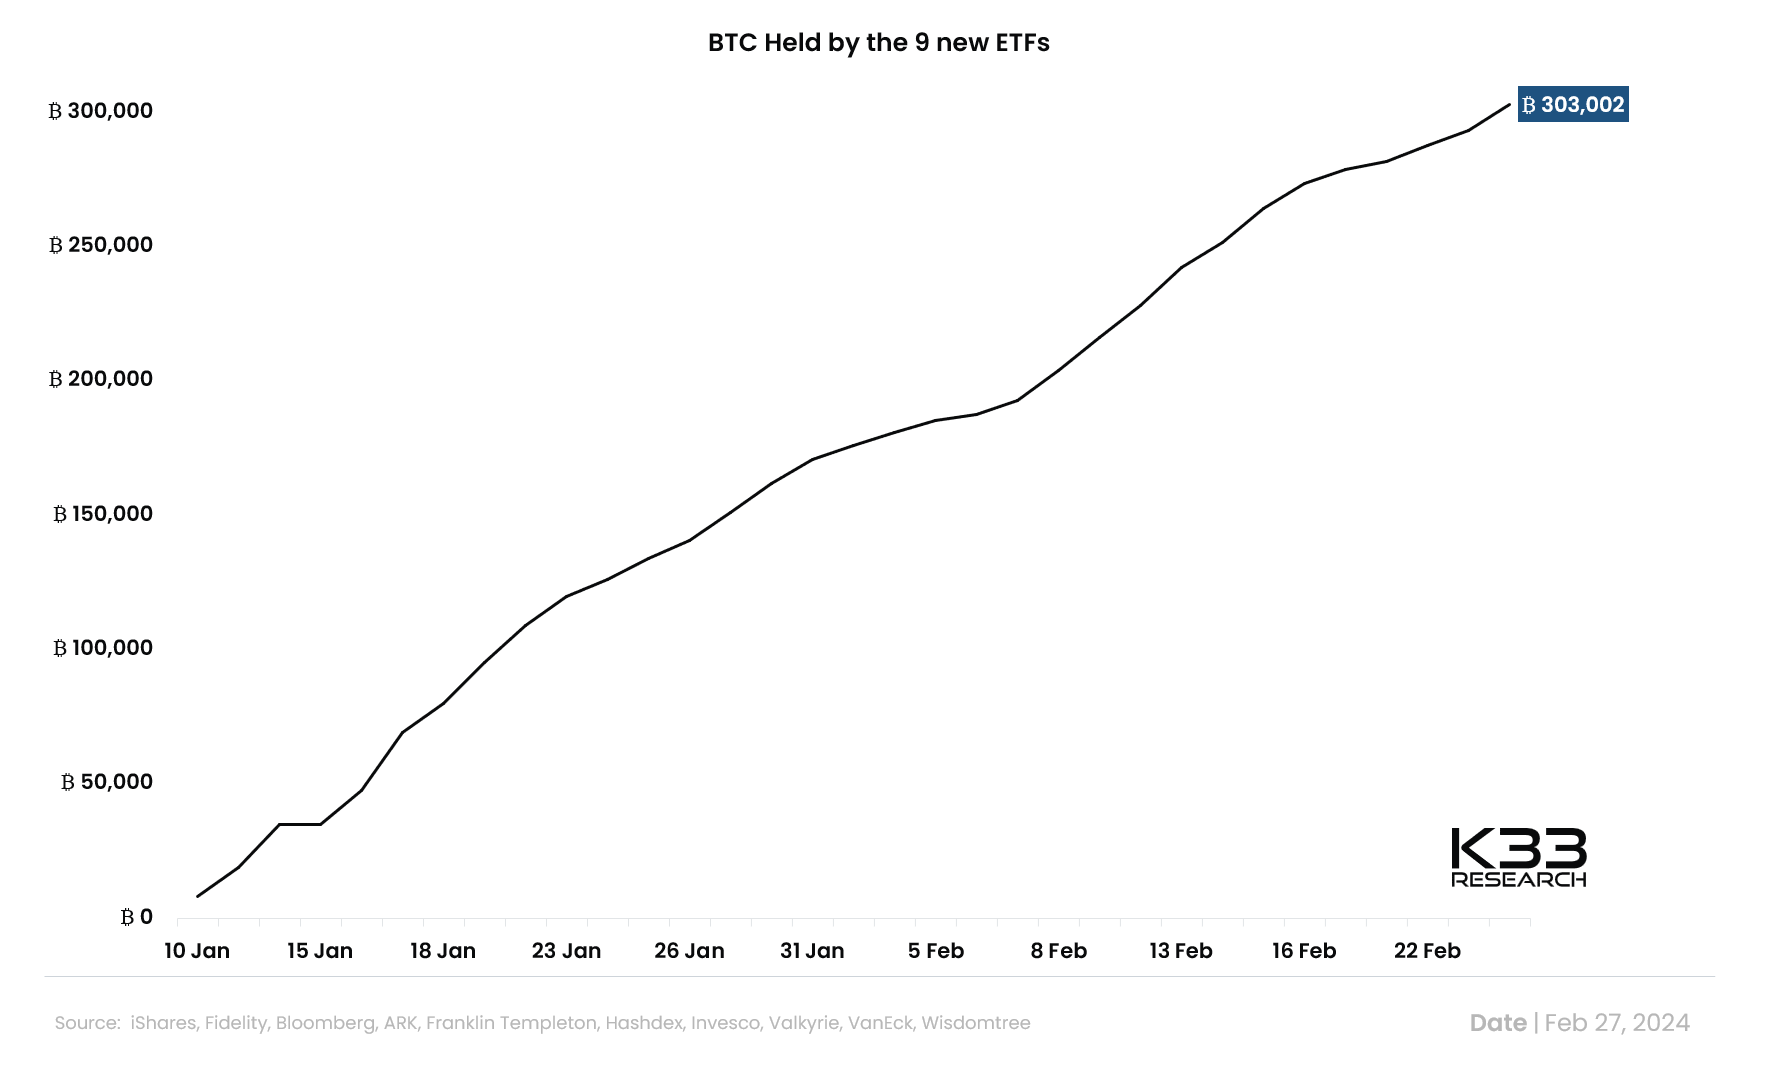 Los nuevos ETF de Bitcoin al contado han logrado acumular más de 300.000 BTC en activos bajo gestión en menos de dos meses de operación.